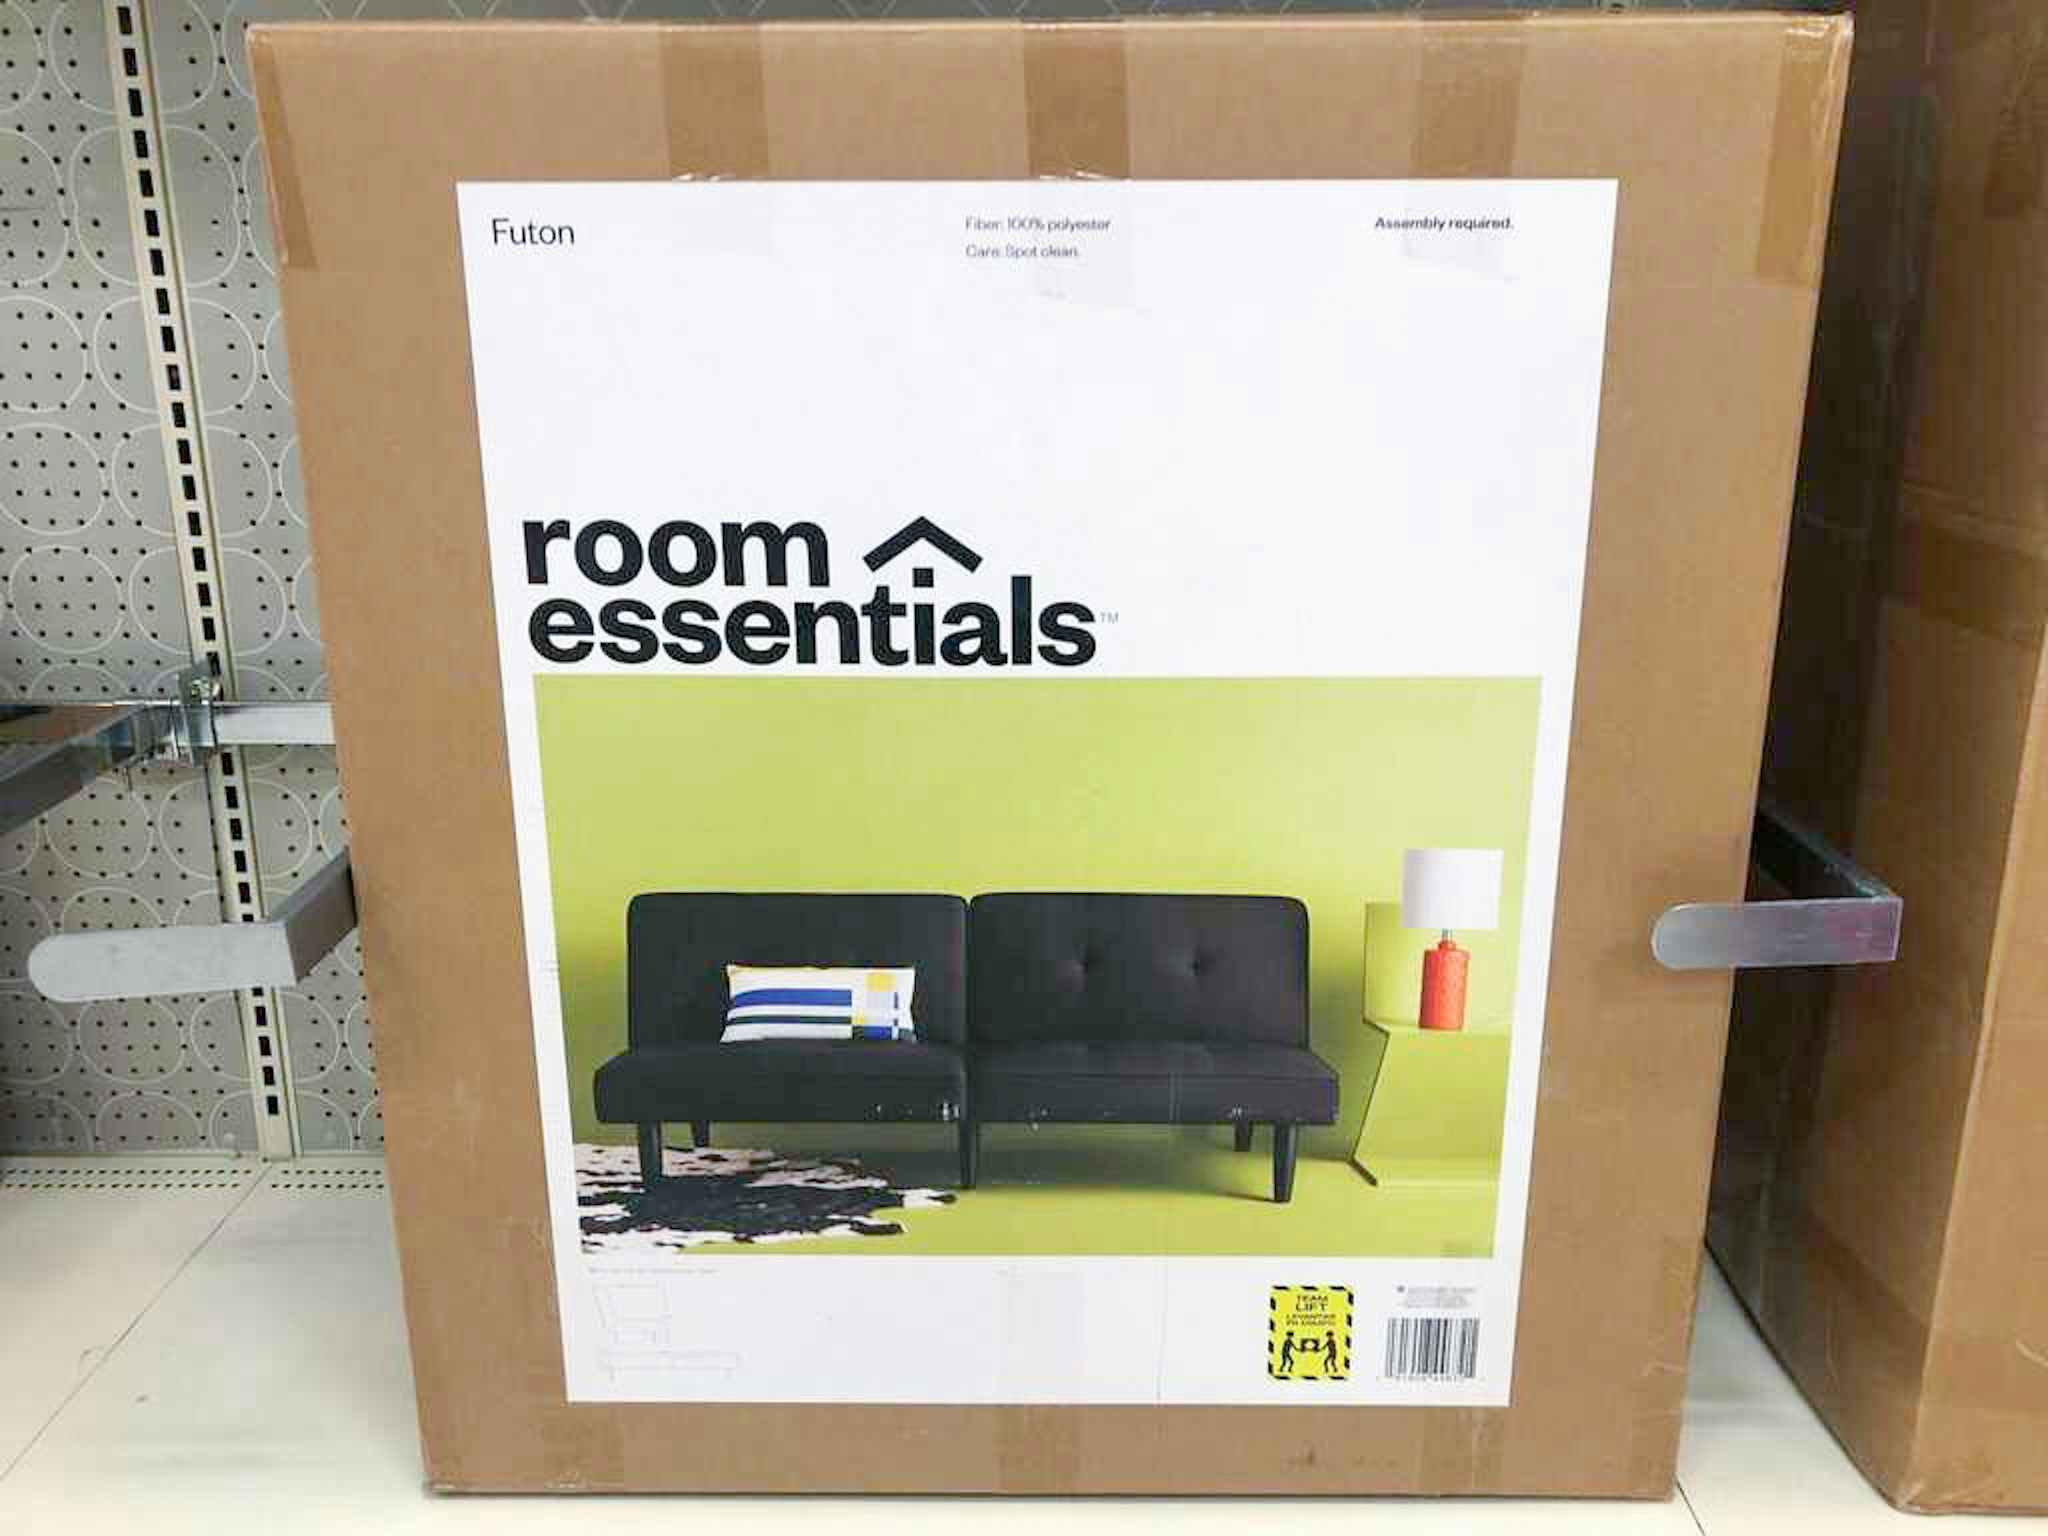 room essentials futon sofa at target